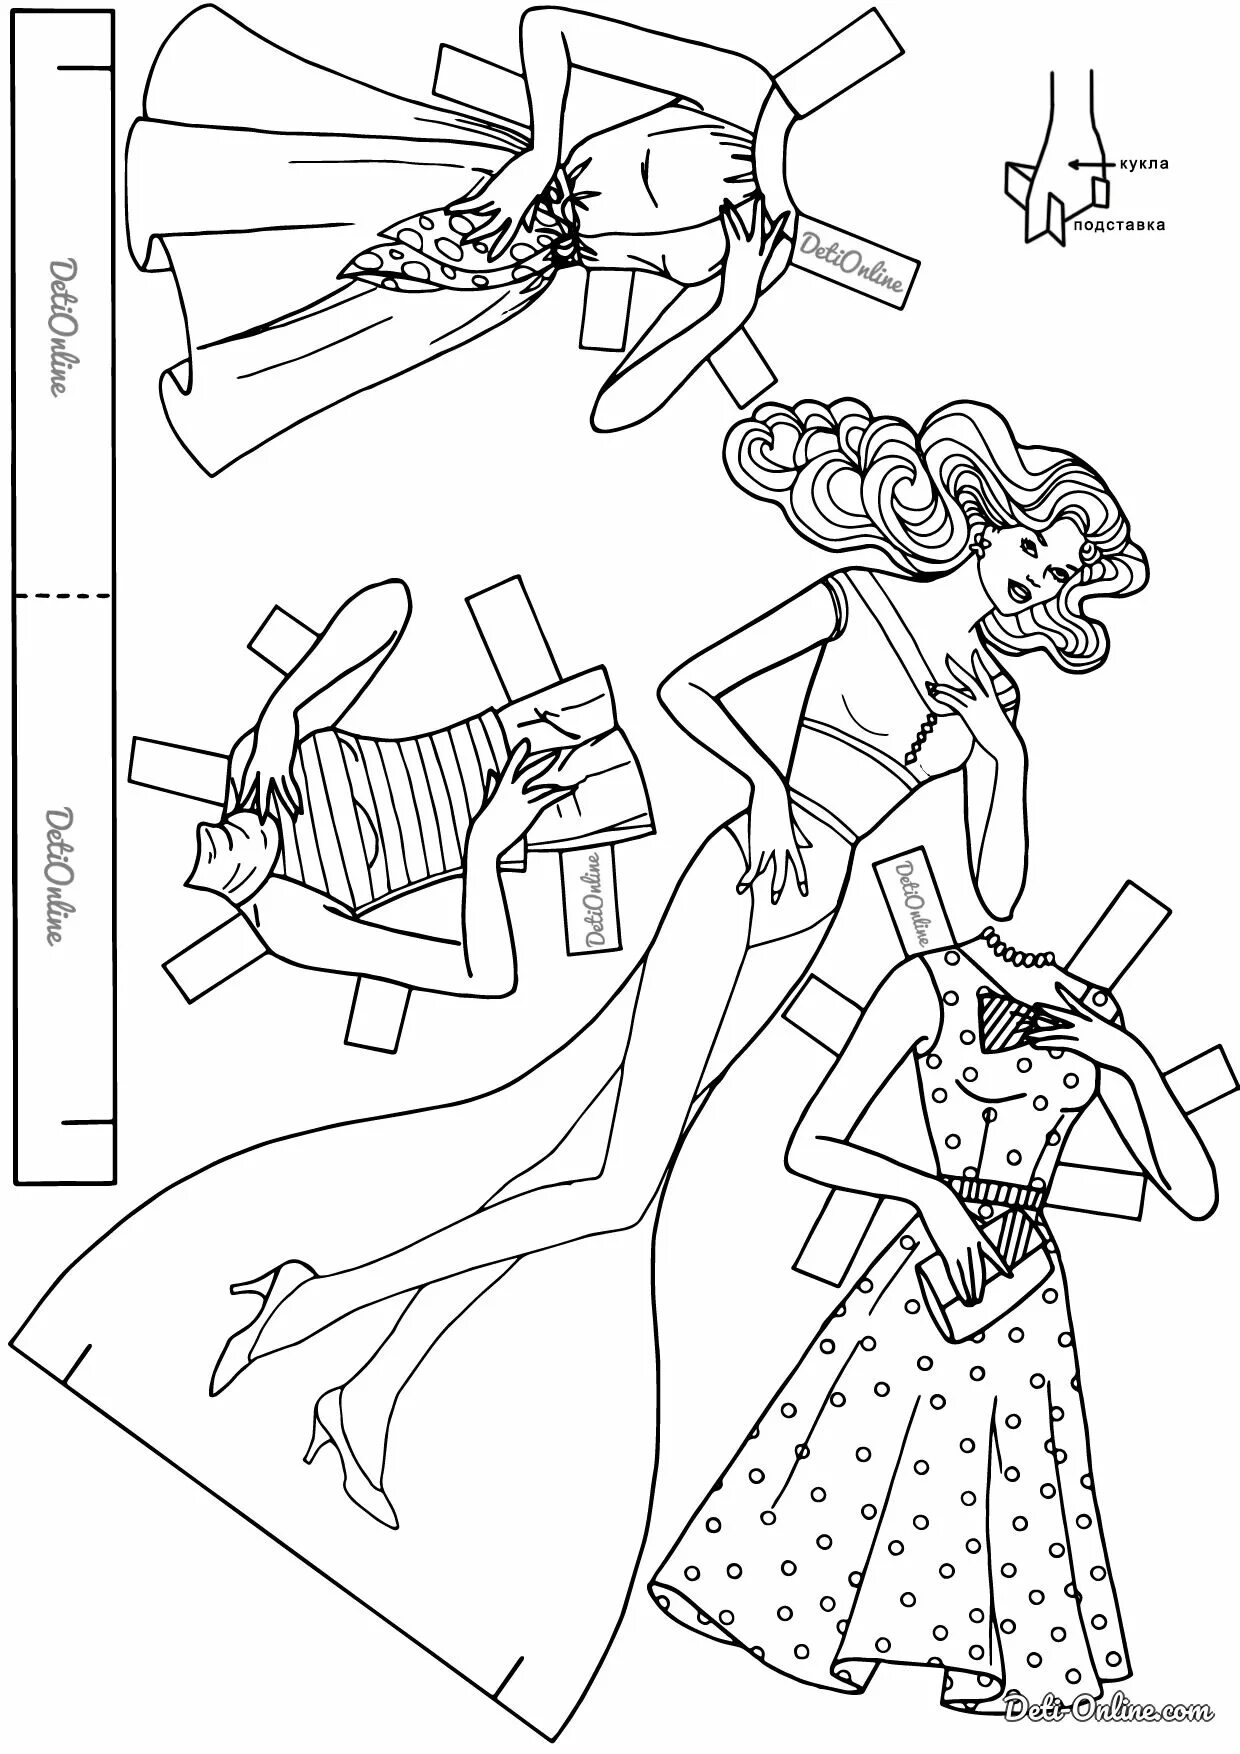 Головокружительные куклы барби с вырезанной одеждой